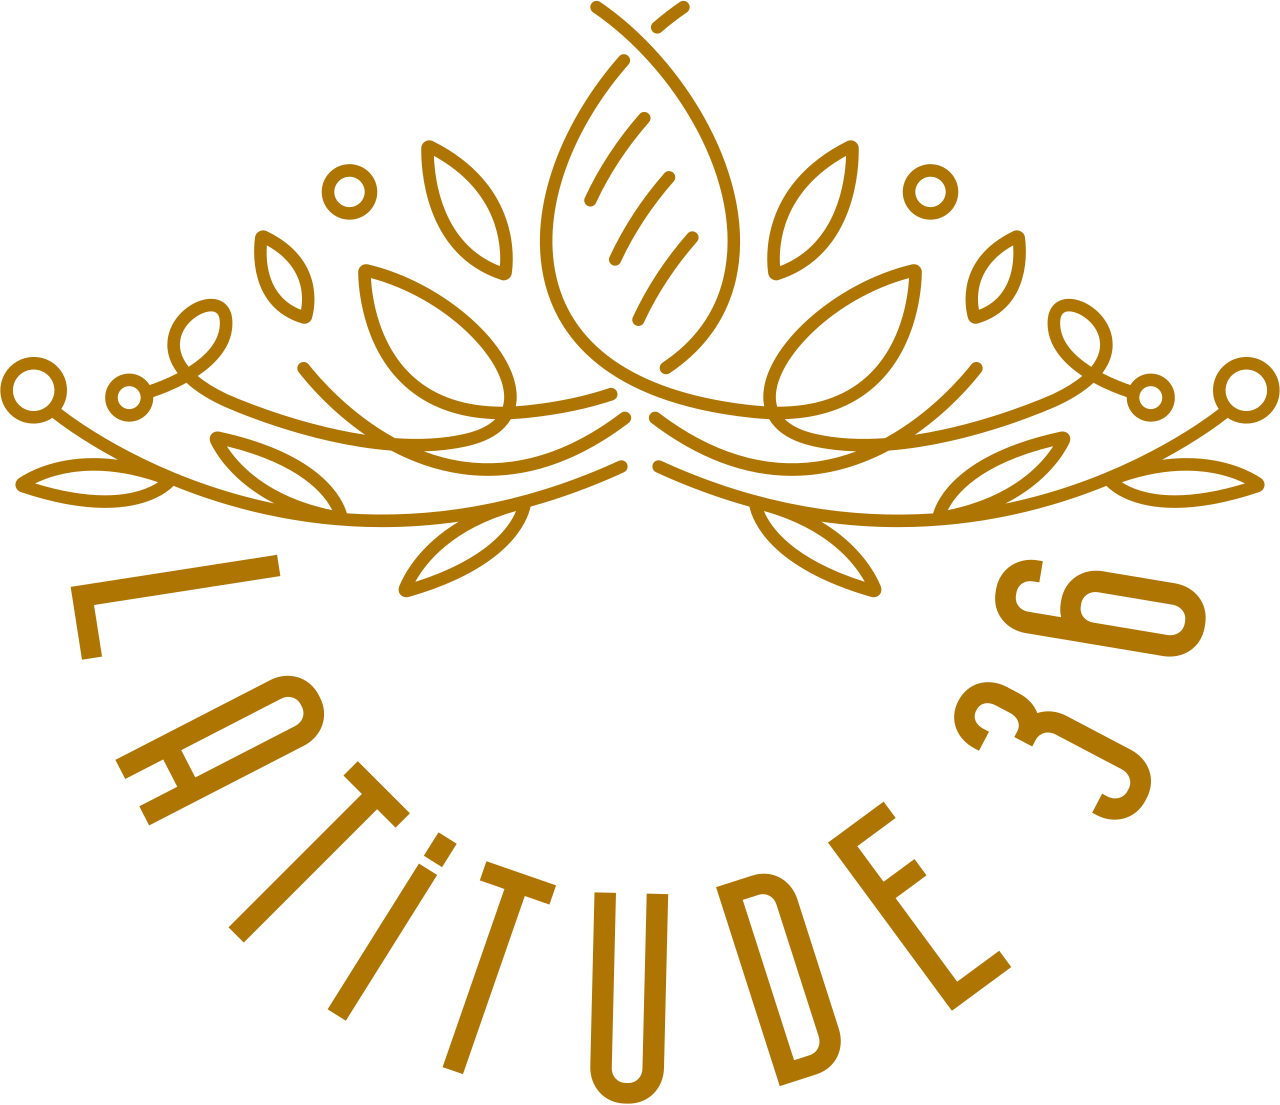 Latitude 36's logo